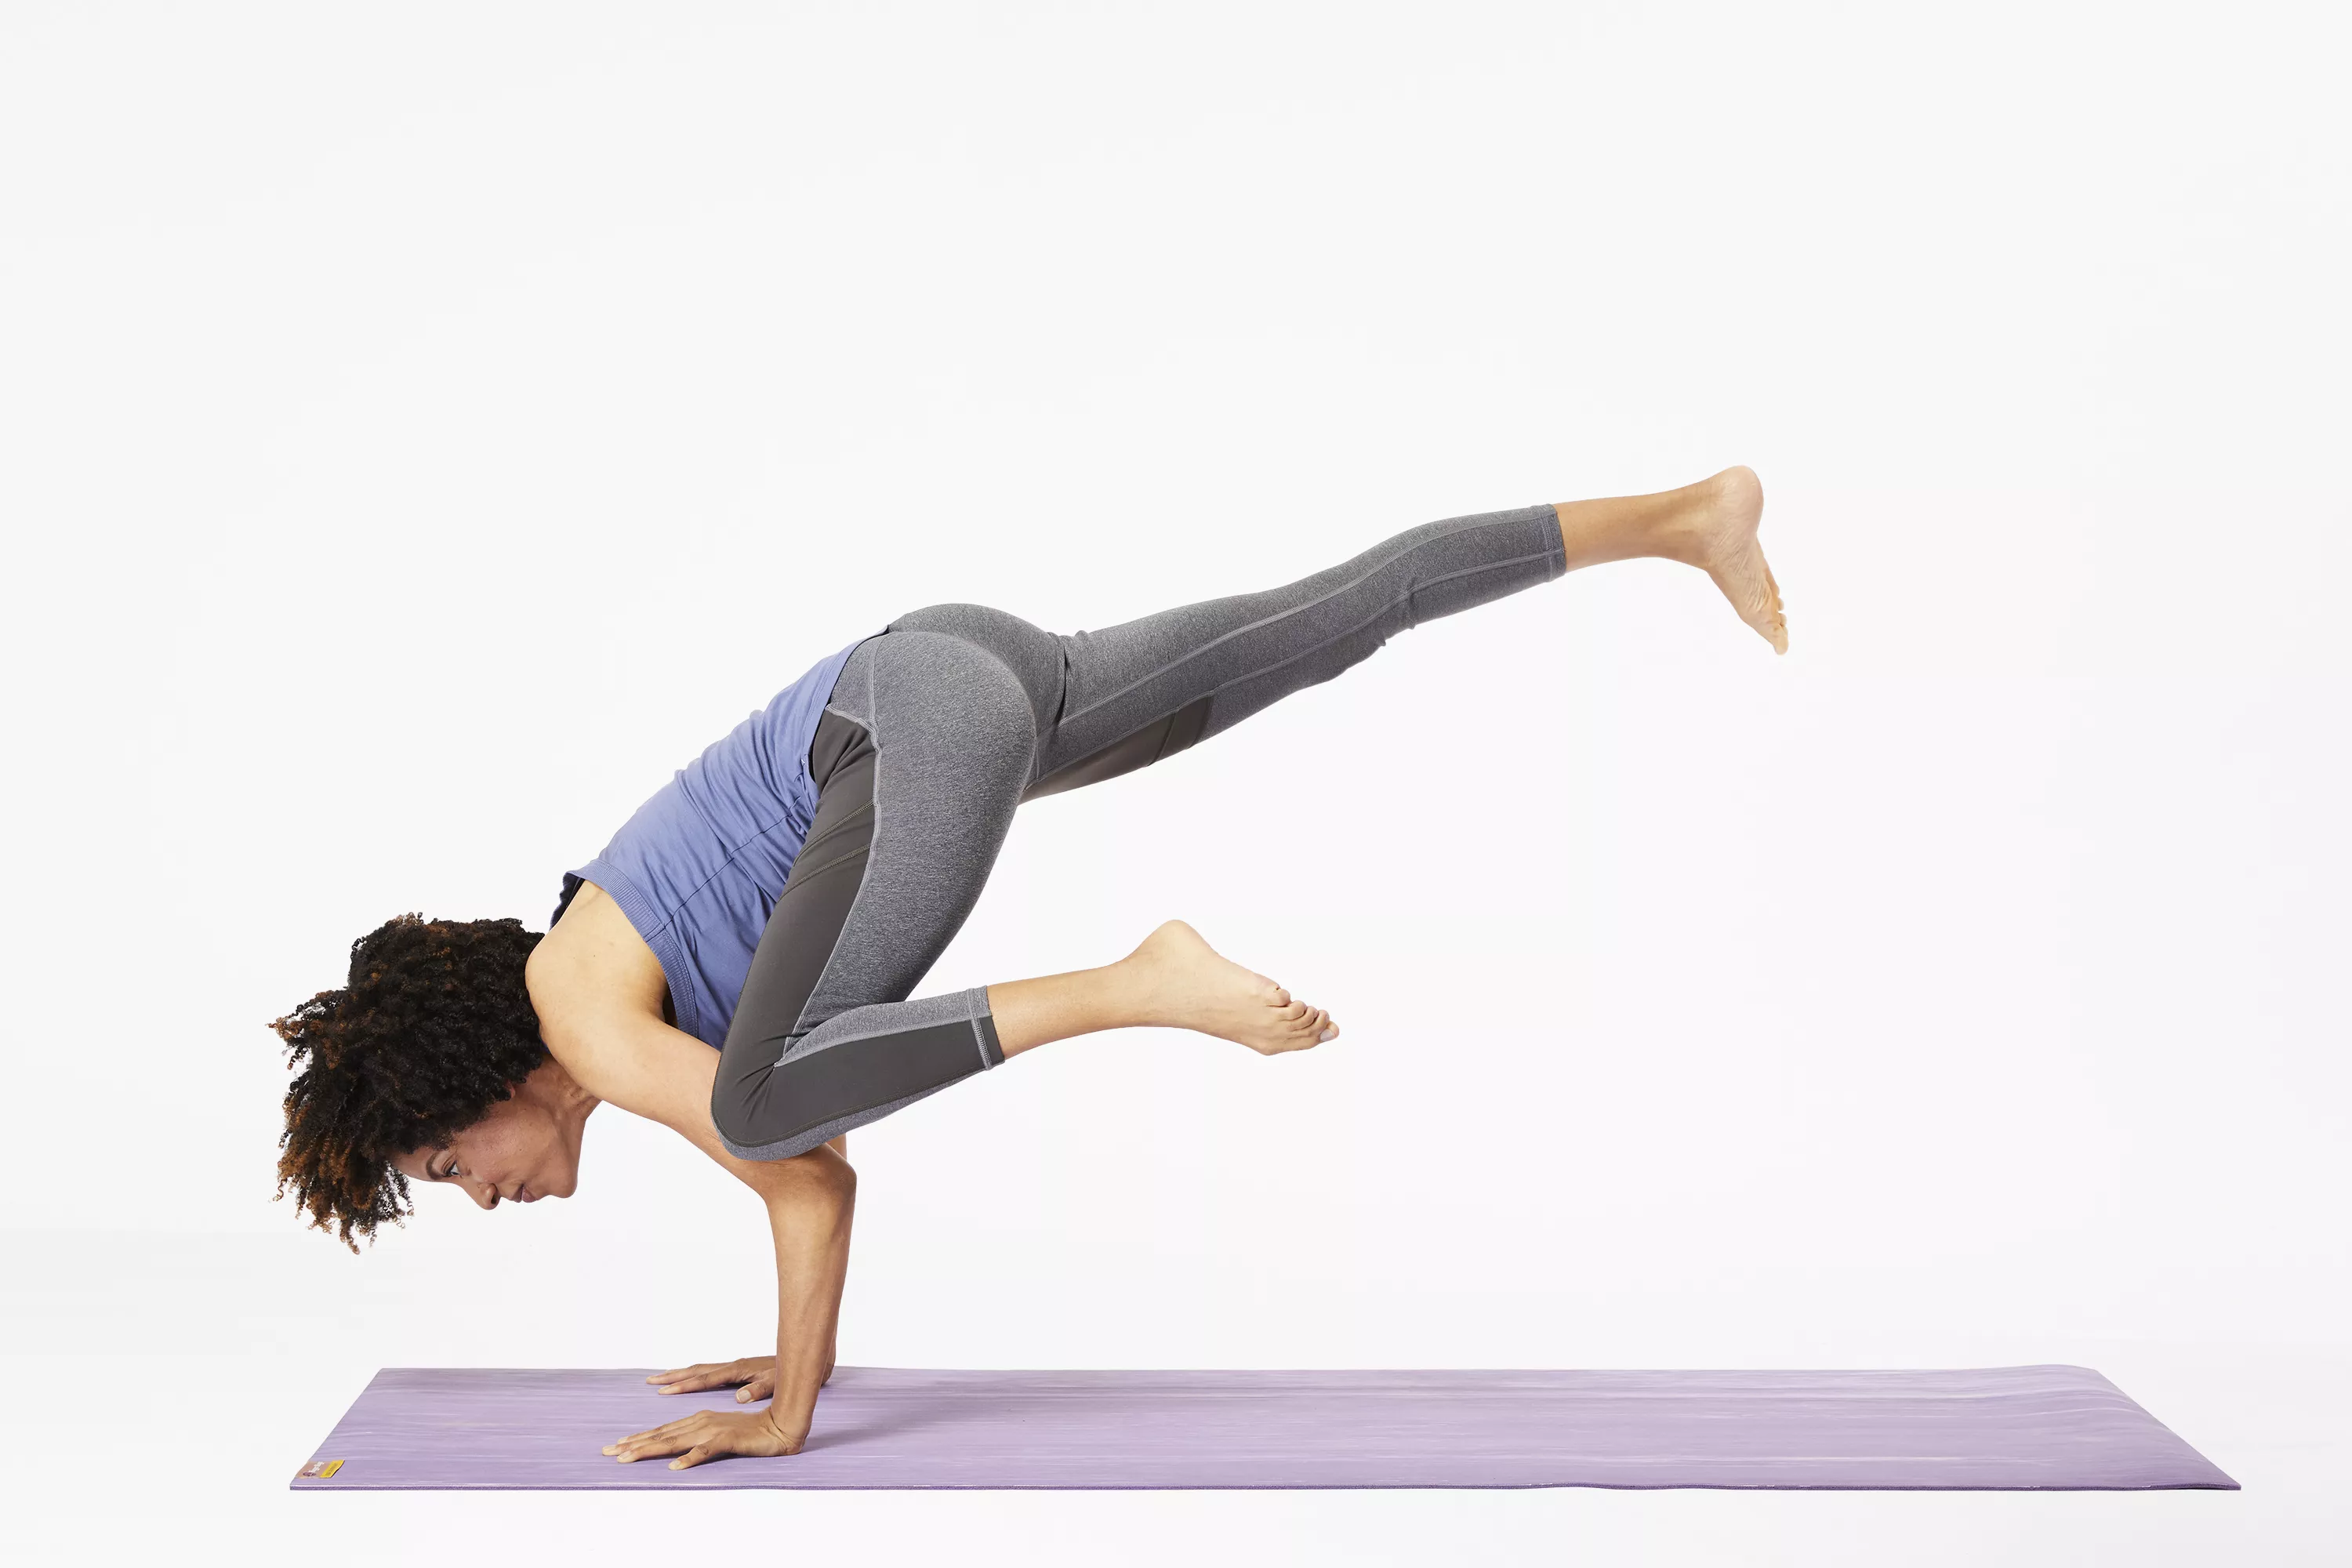 Woman on yoga mat doing flying crow pose